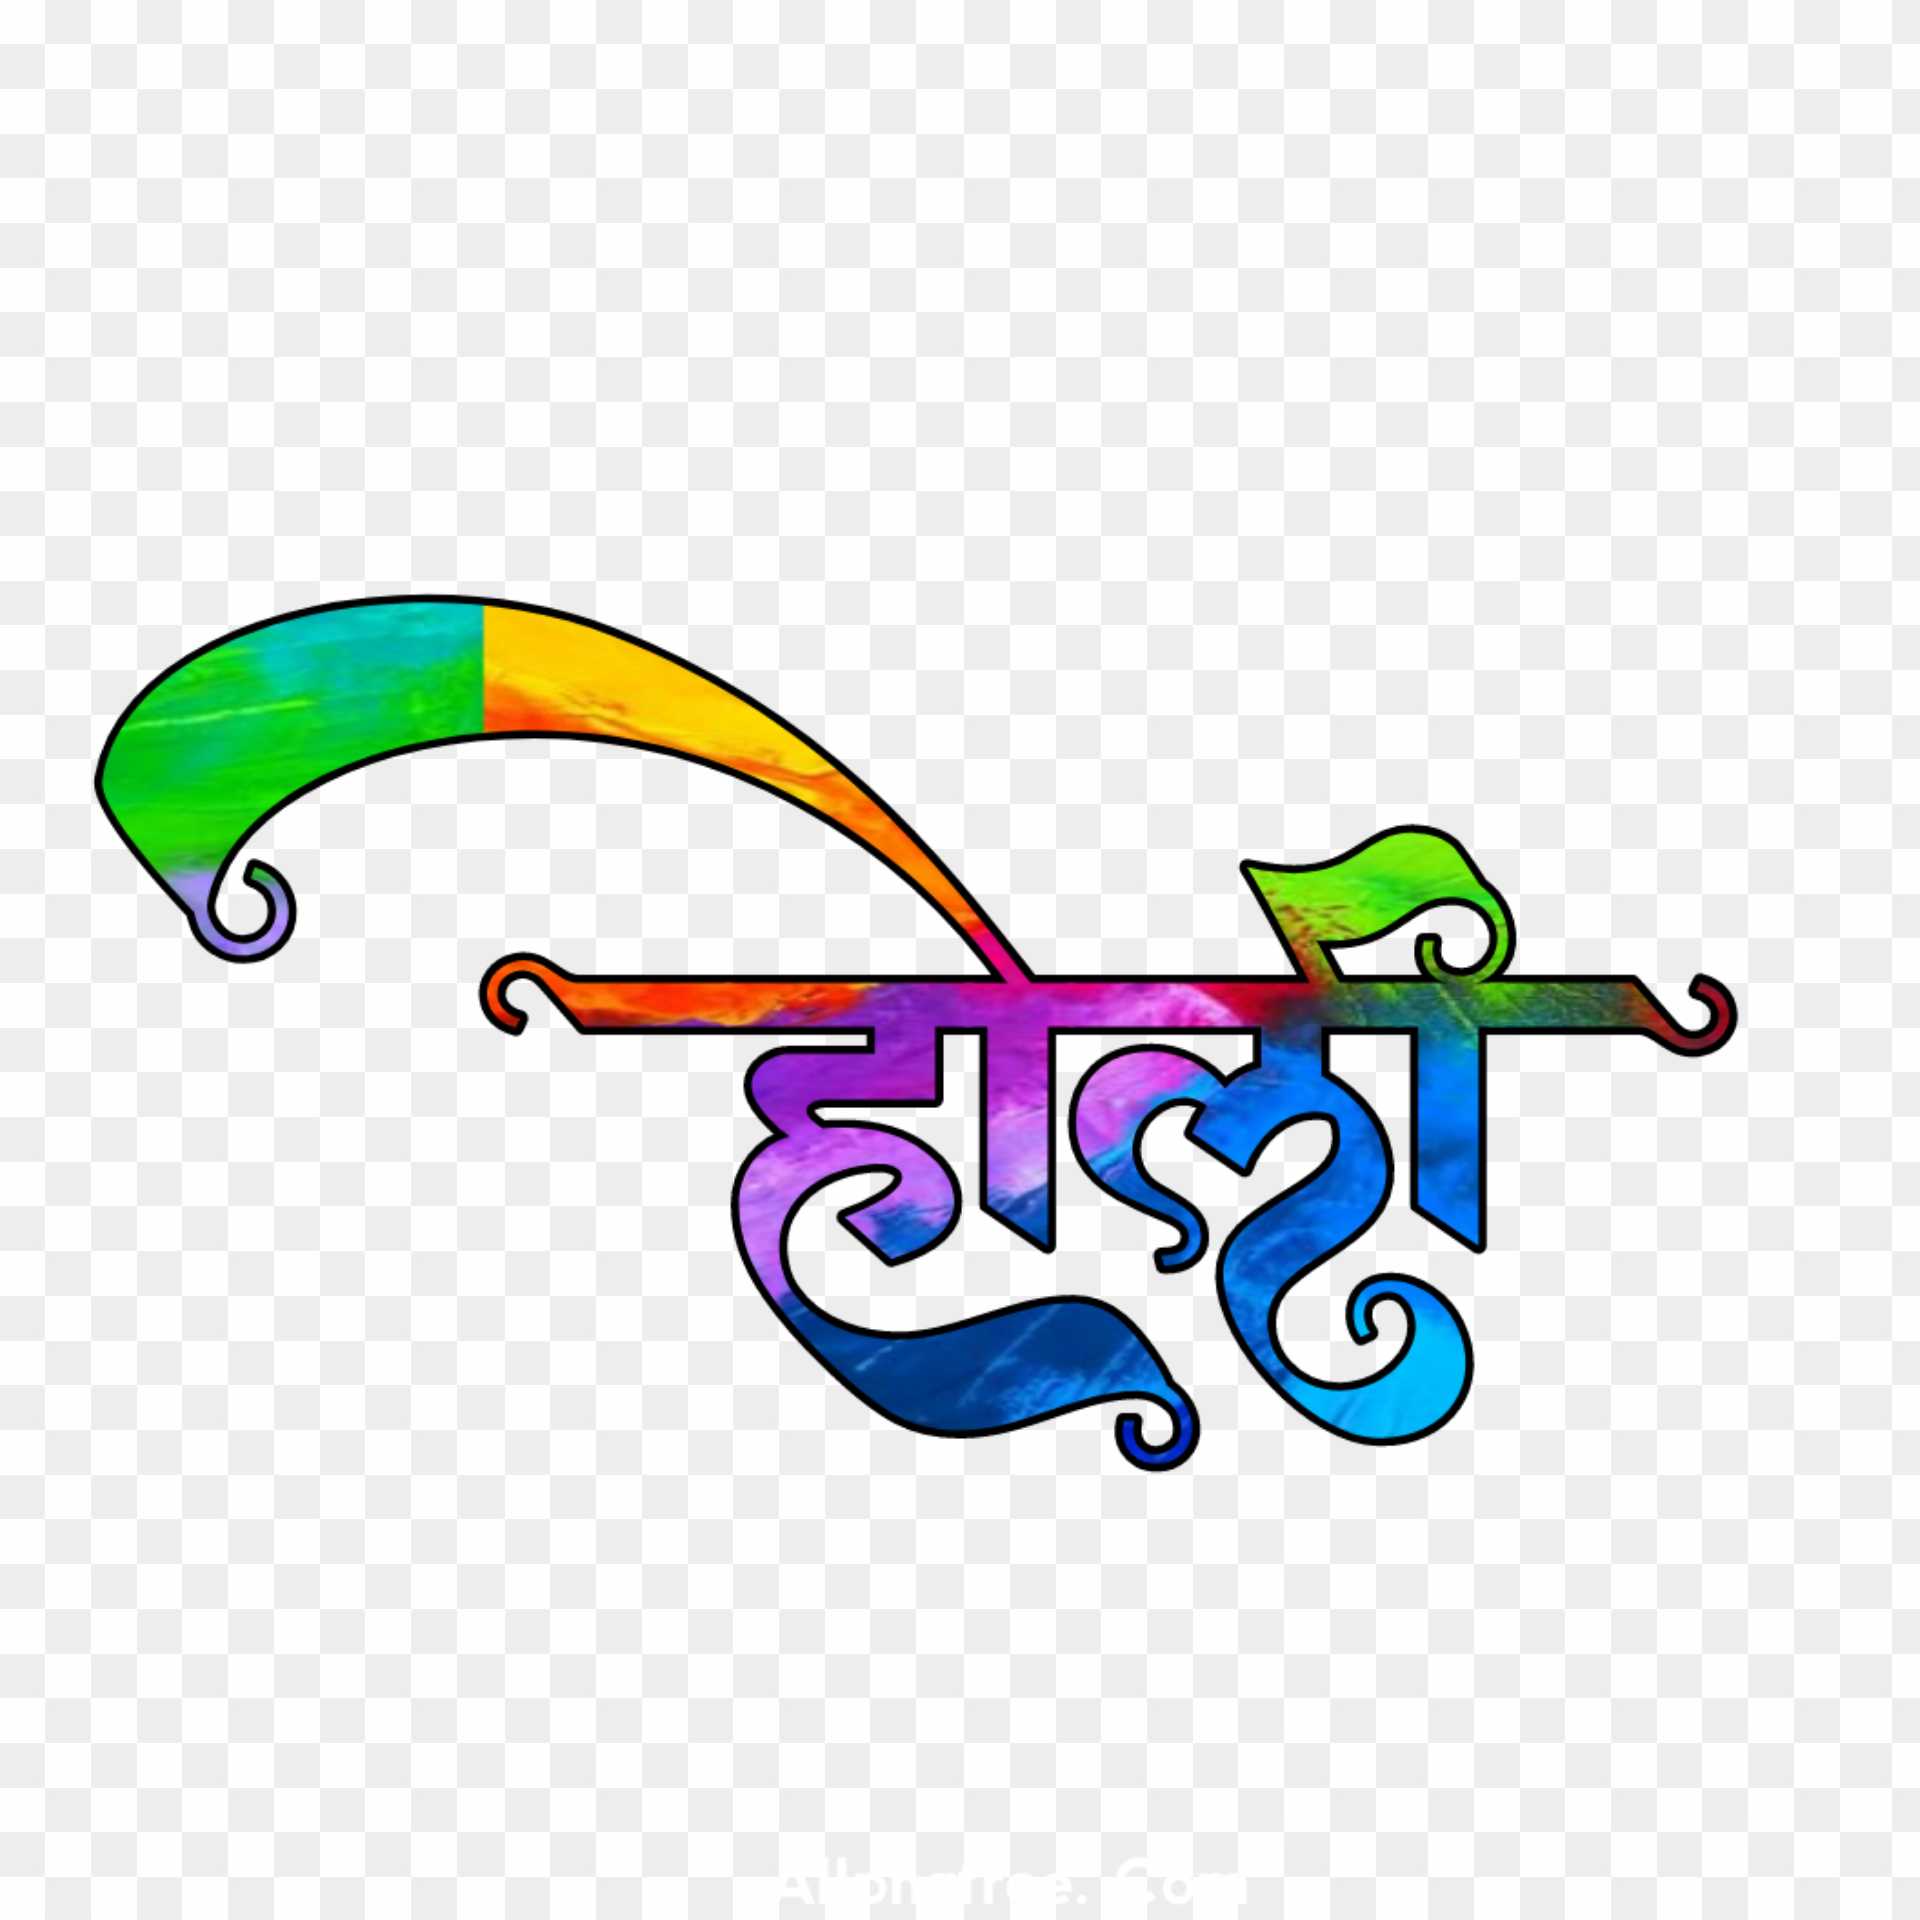 Happy holi hindi png images 